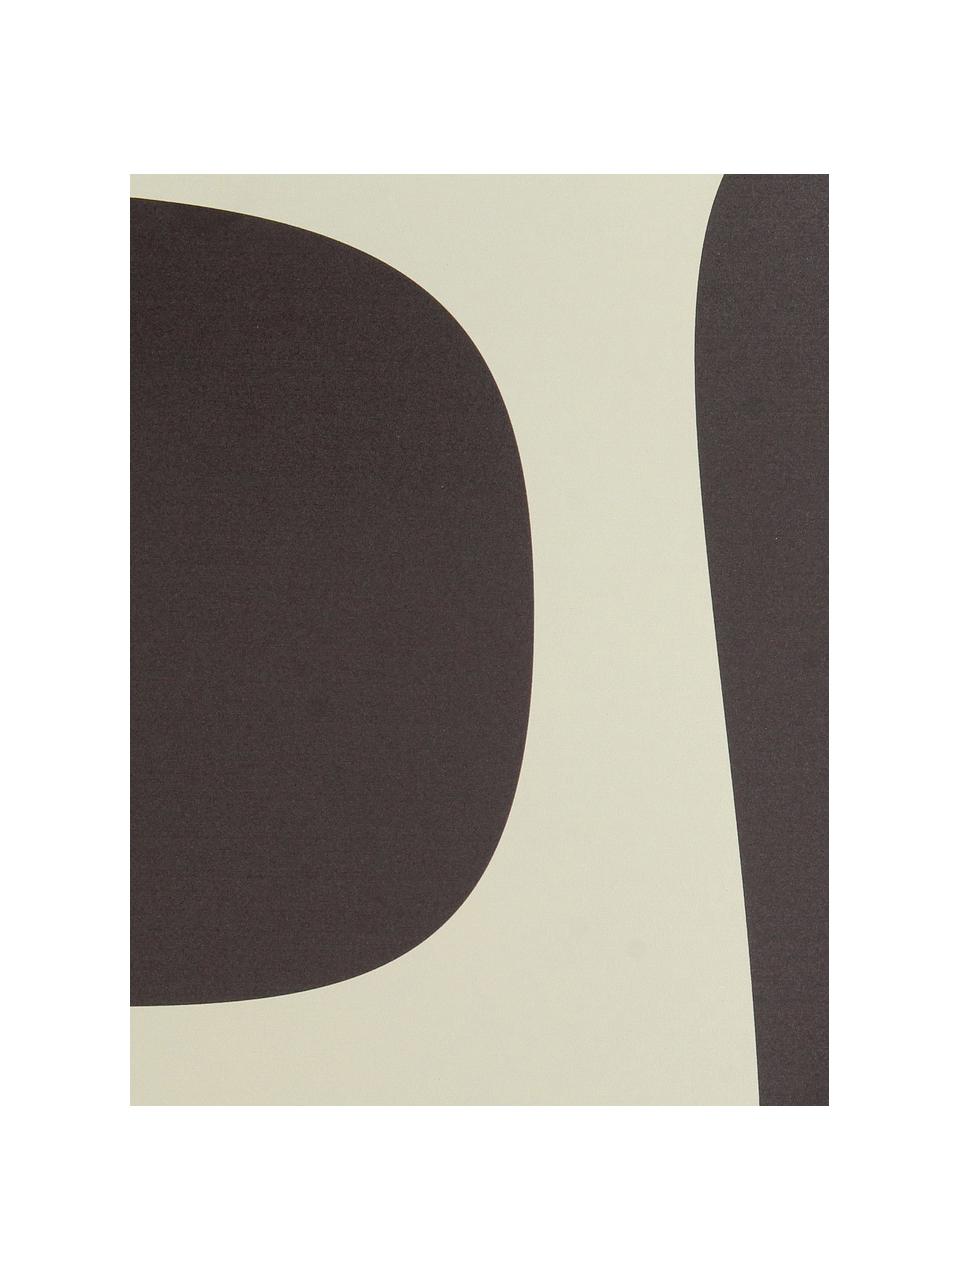 Magnetische Tafel Organic, Metal, Schwarz, Weiß, 40 x 60 cm